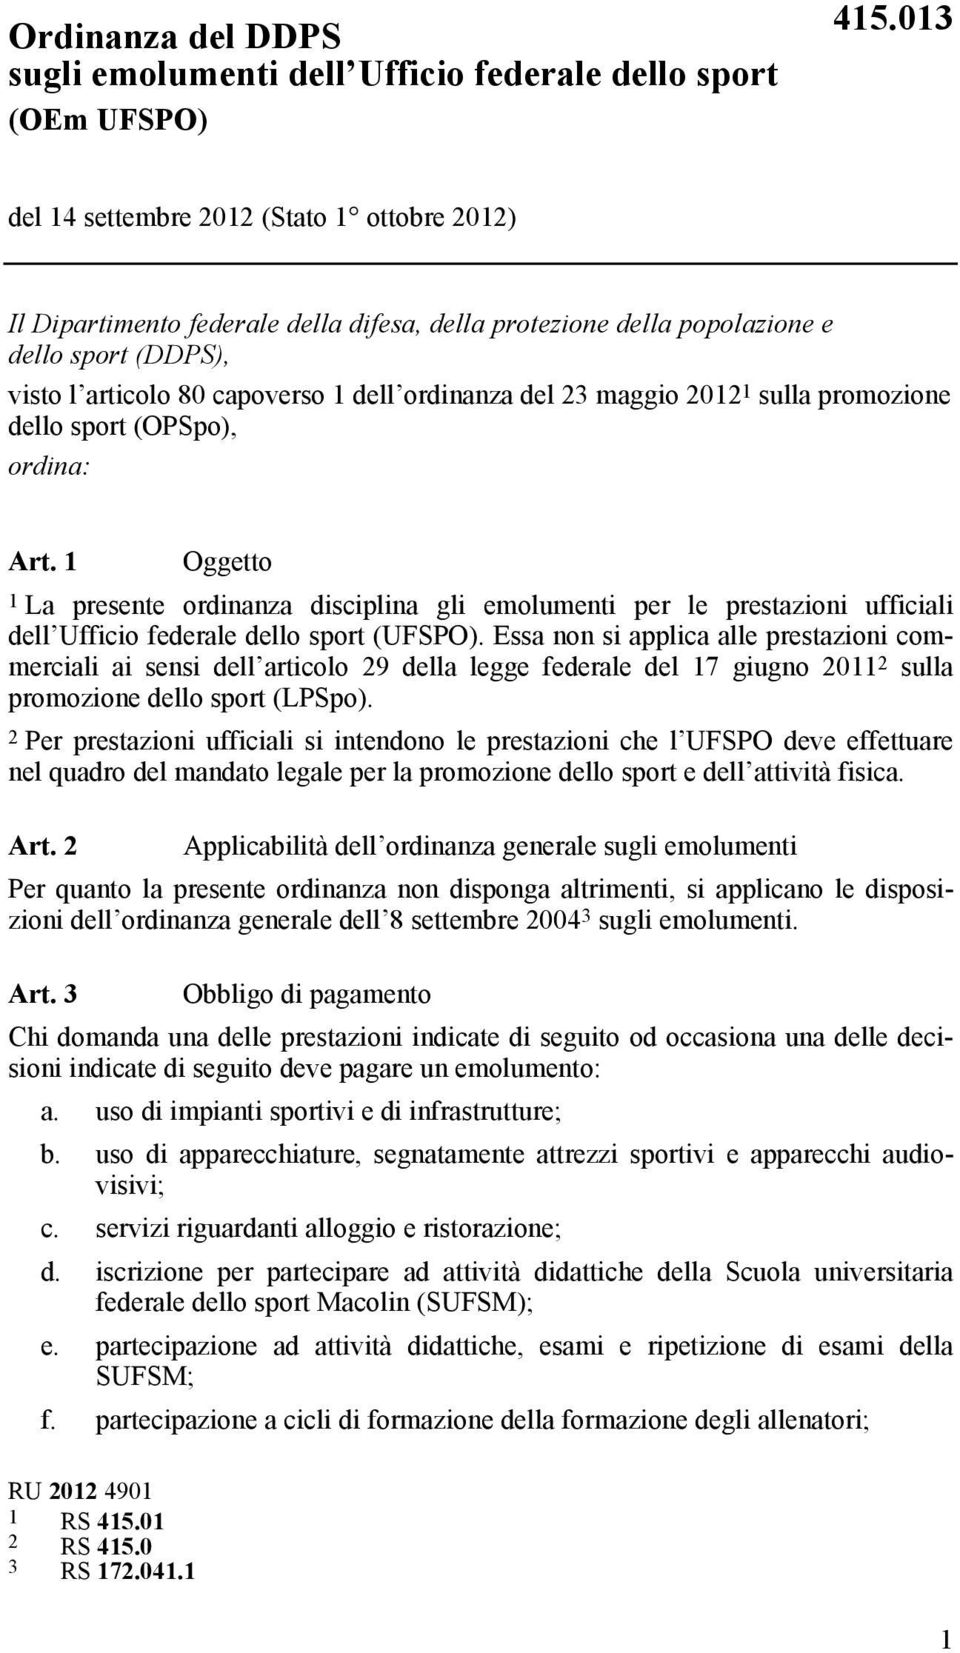 maggio 2012 1 sulla promozione dello sport (OPSpo), ordina: Art. 1 Oggetto 1 La presente ordinanza disciplina gli emolumenti per le prestazioni ufficiali dell Ufficio federale dello sport (UFSPO).